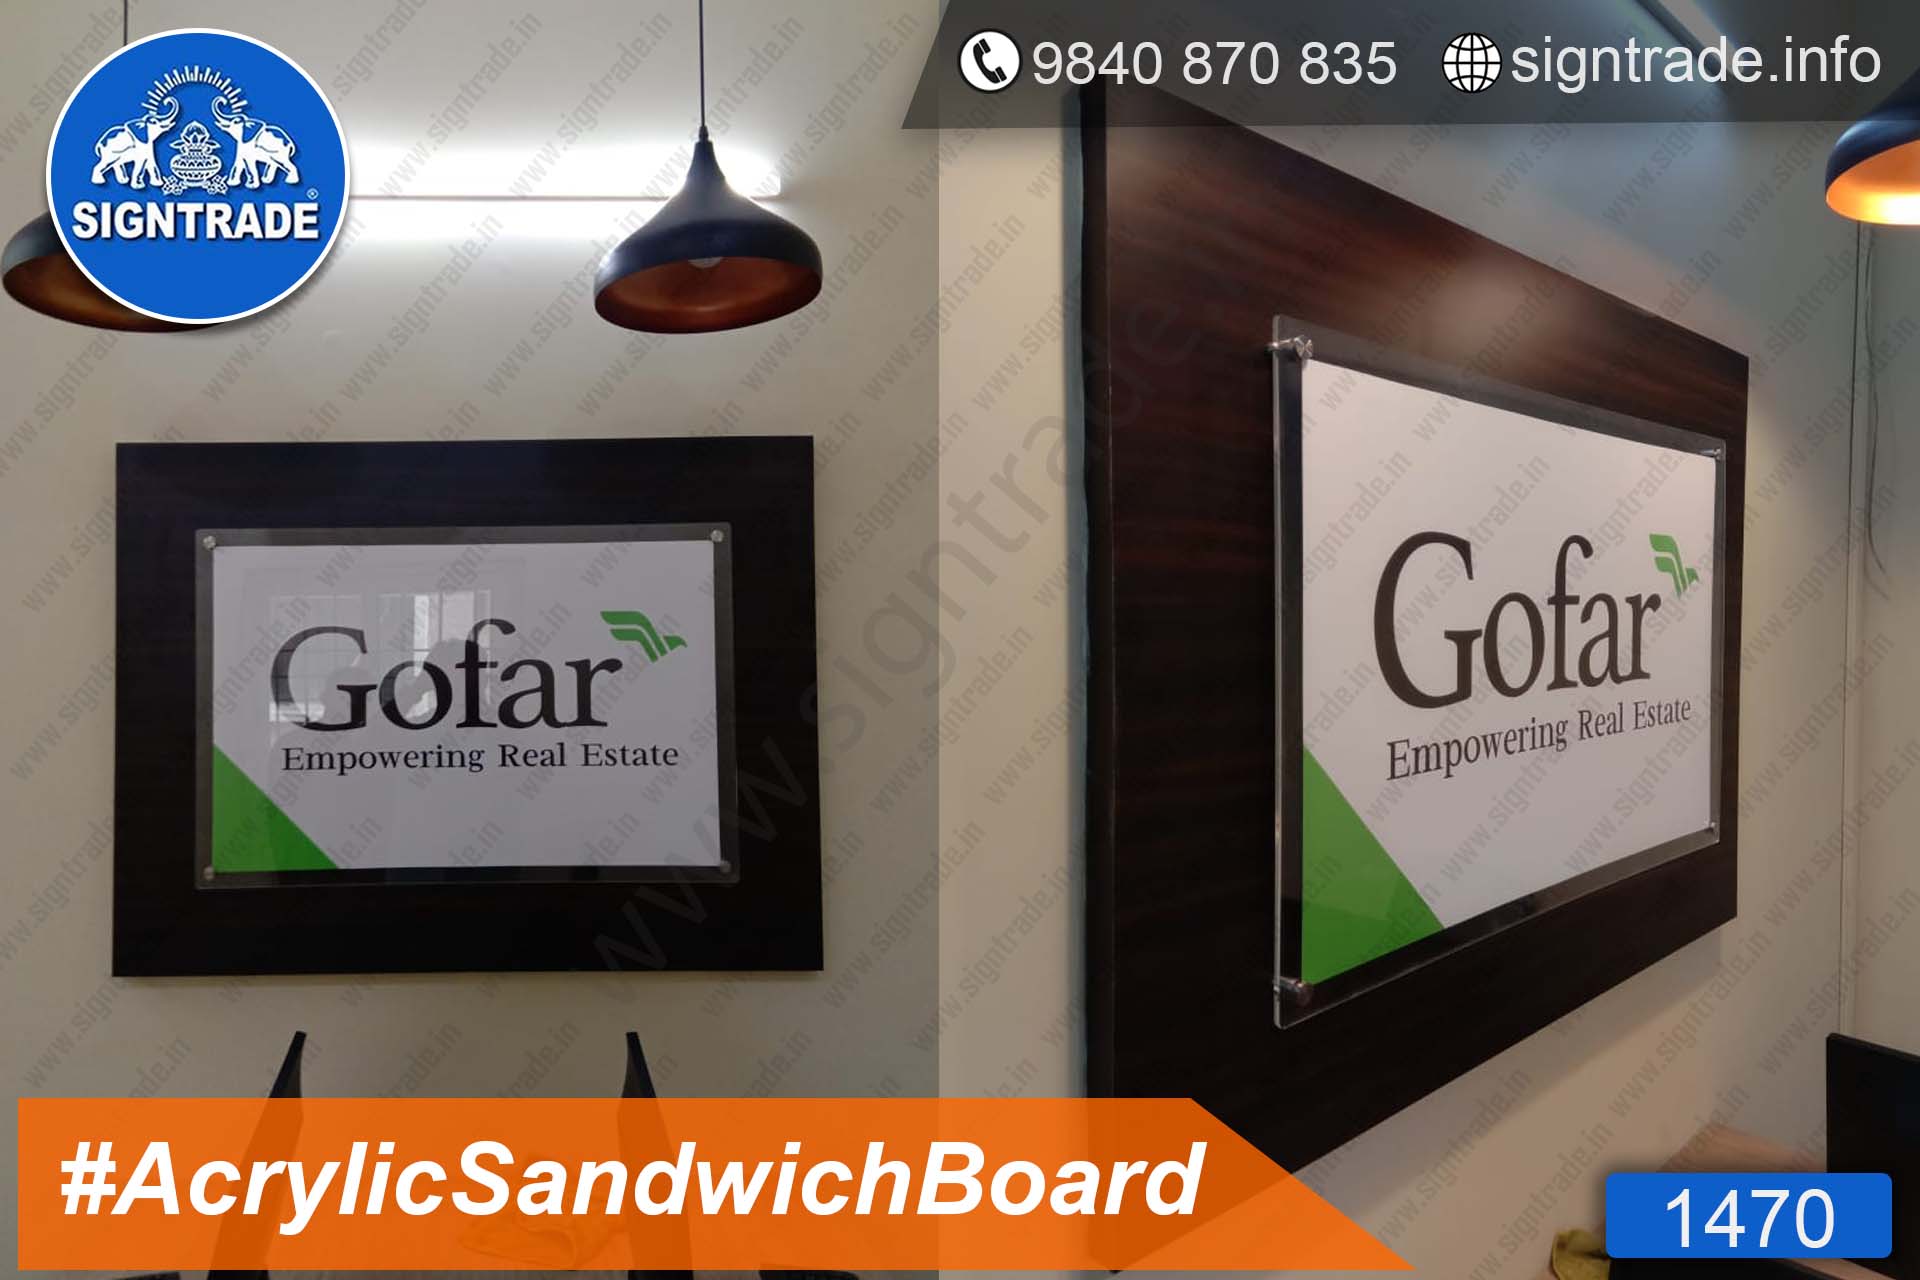 Gofar Empowering Real Estate - Acrylic Sandwich Board - SIGNTRADE - Acrylic Sandwich Board Manufacture in Chennai